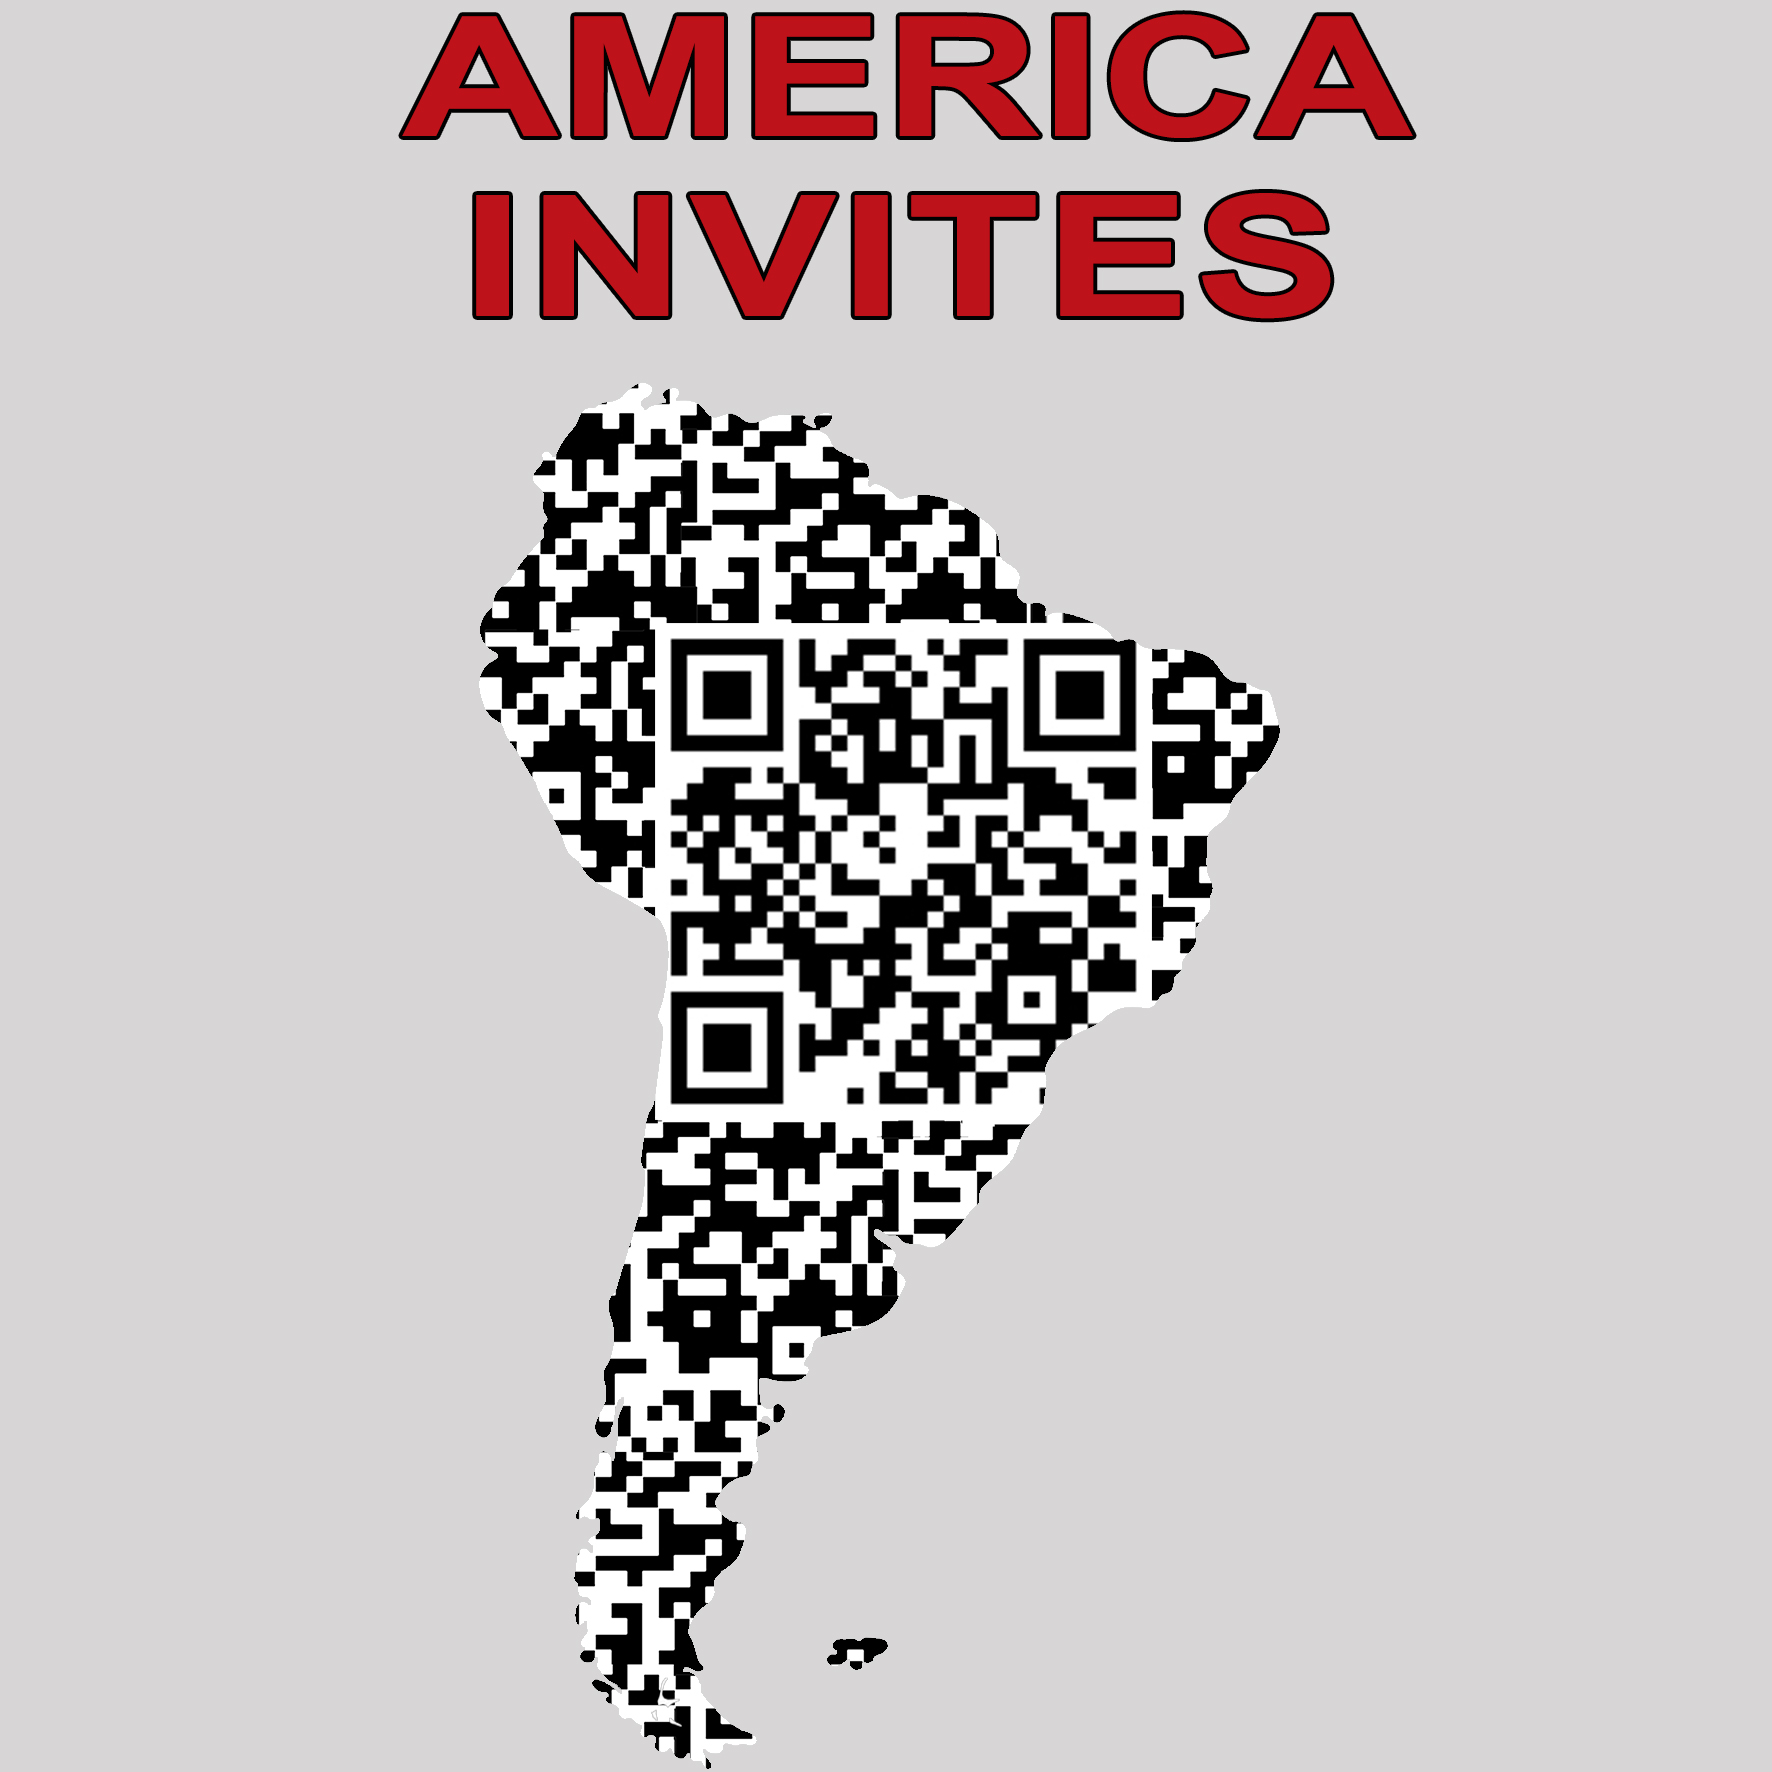 AMERICA INVITES